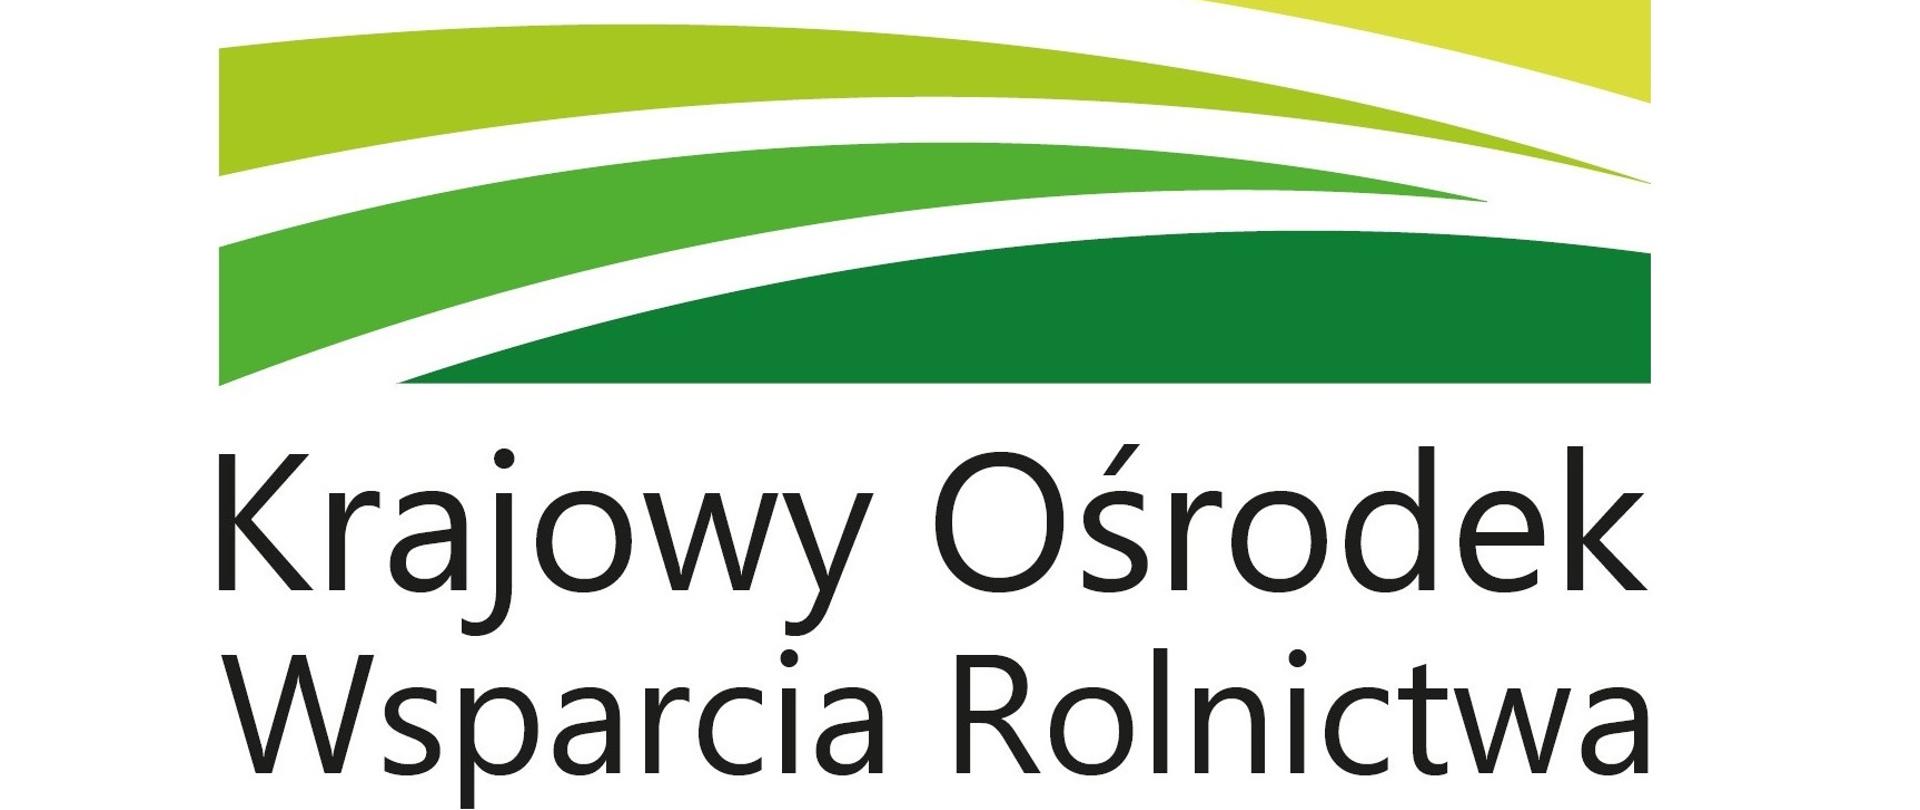 Obrazek przedstawia logo Krajowego Ośrodka Wsparcia Rolnictwa w zielone, równoległe pasy z napisem Krajowy Ośrodek Wsparcia Rolnictwa.